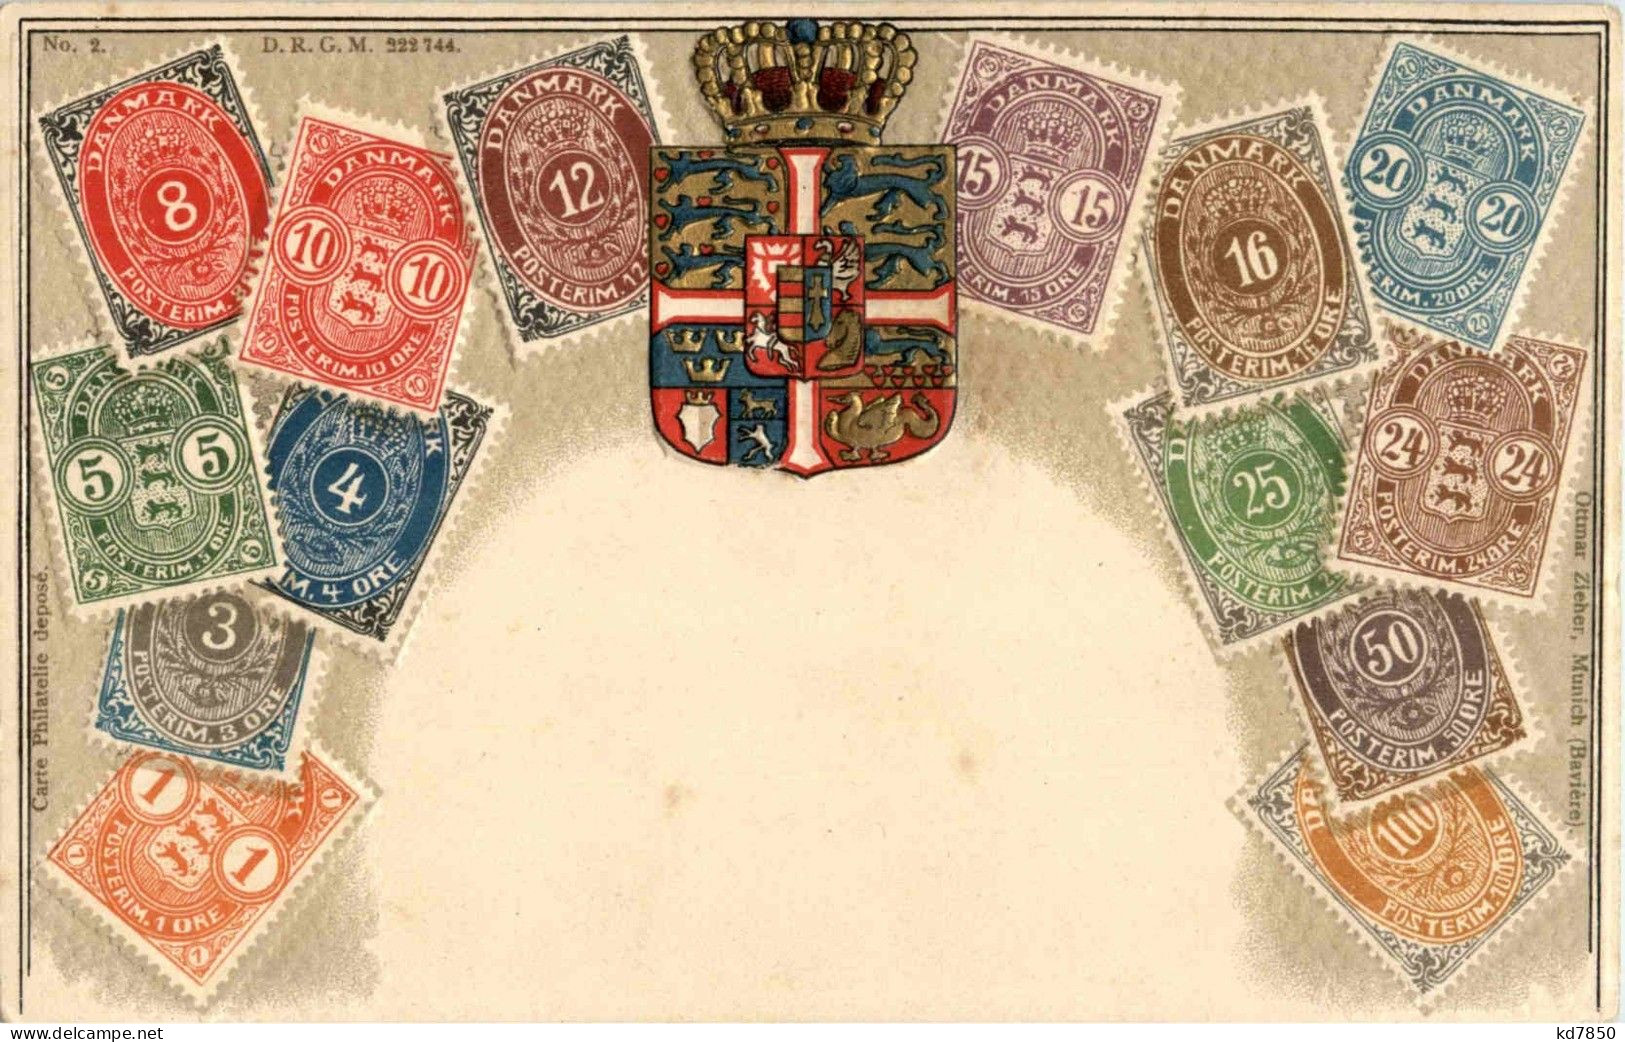 Danmark - Briefmarken - Stamps - Prägekarte - Briefmarken (Abbildungen)